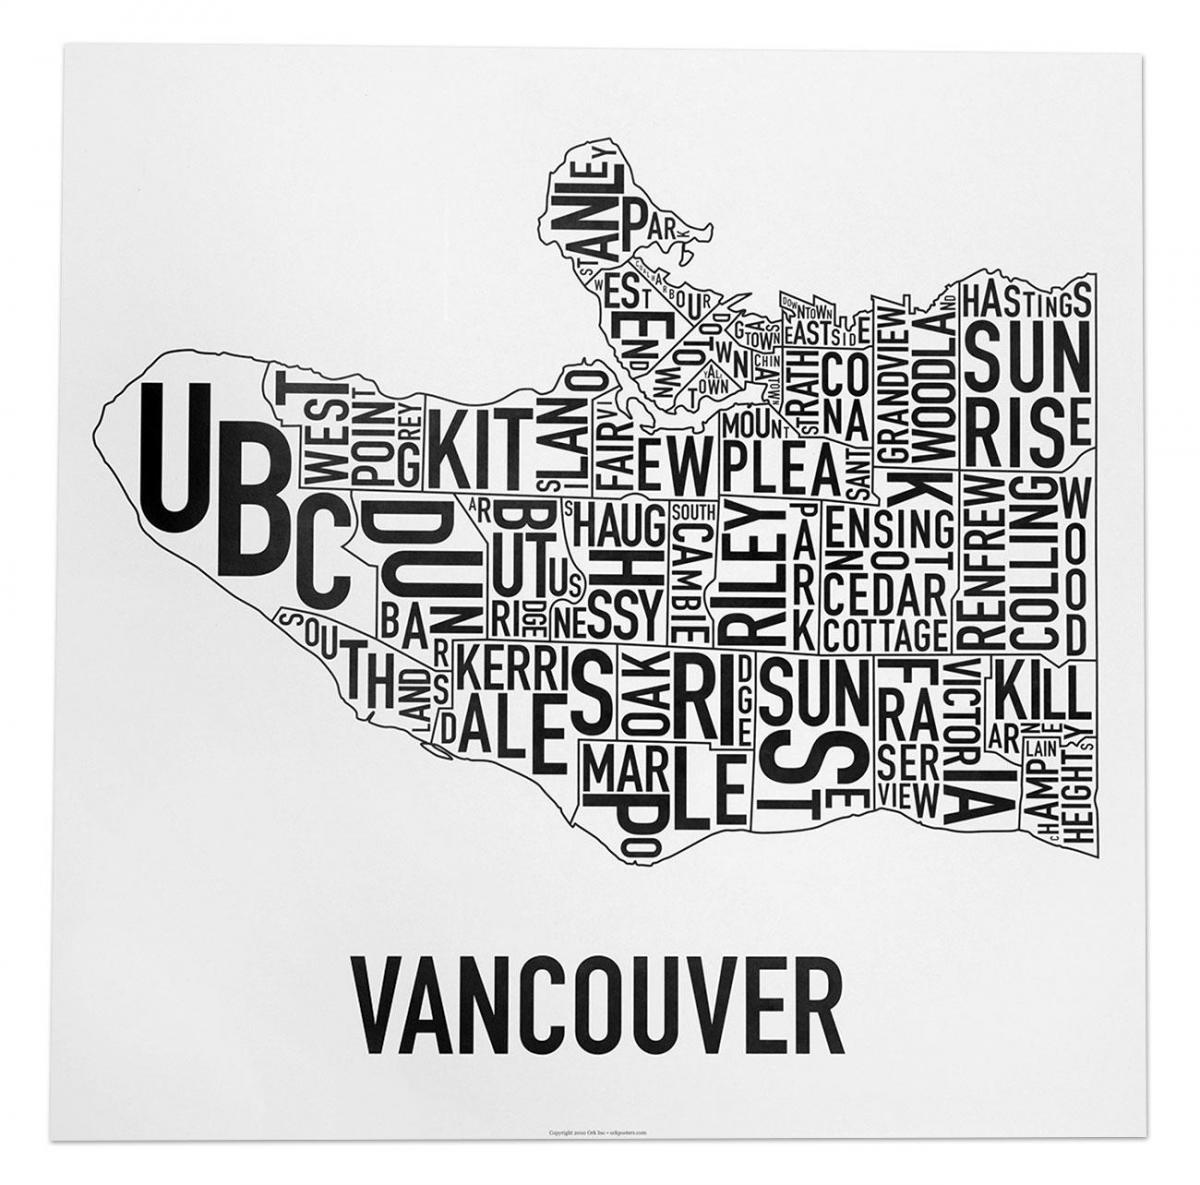 नक्शा वैंकूवर के पोस्टर